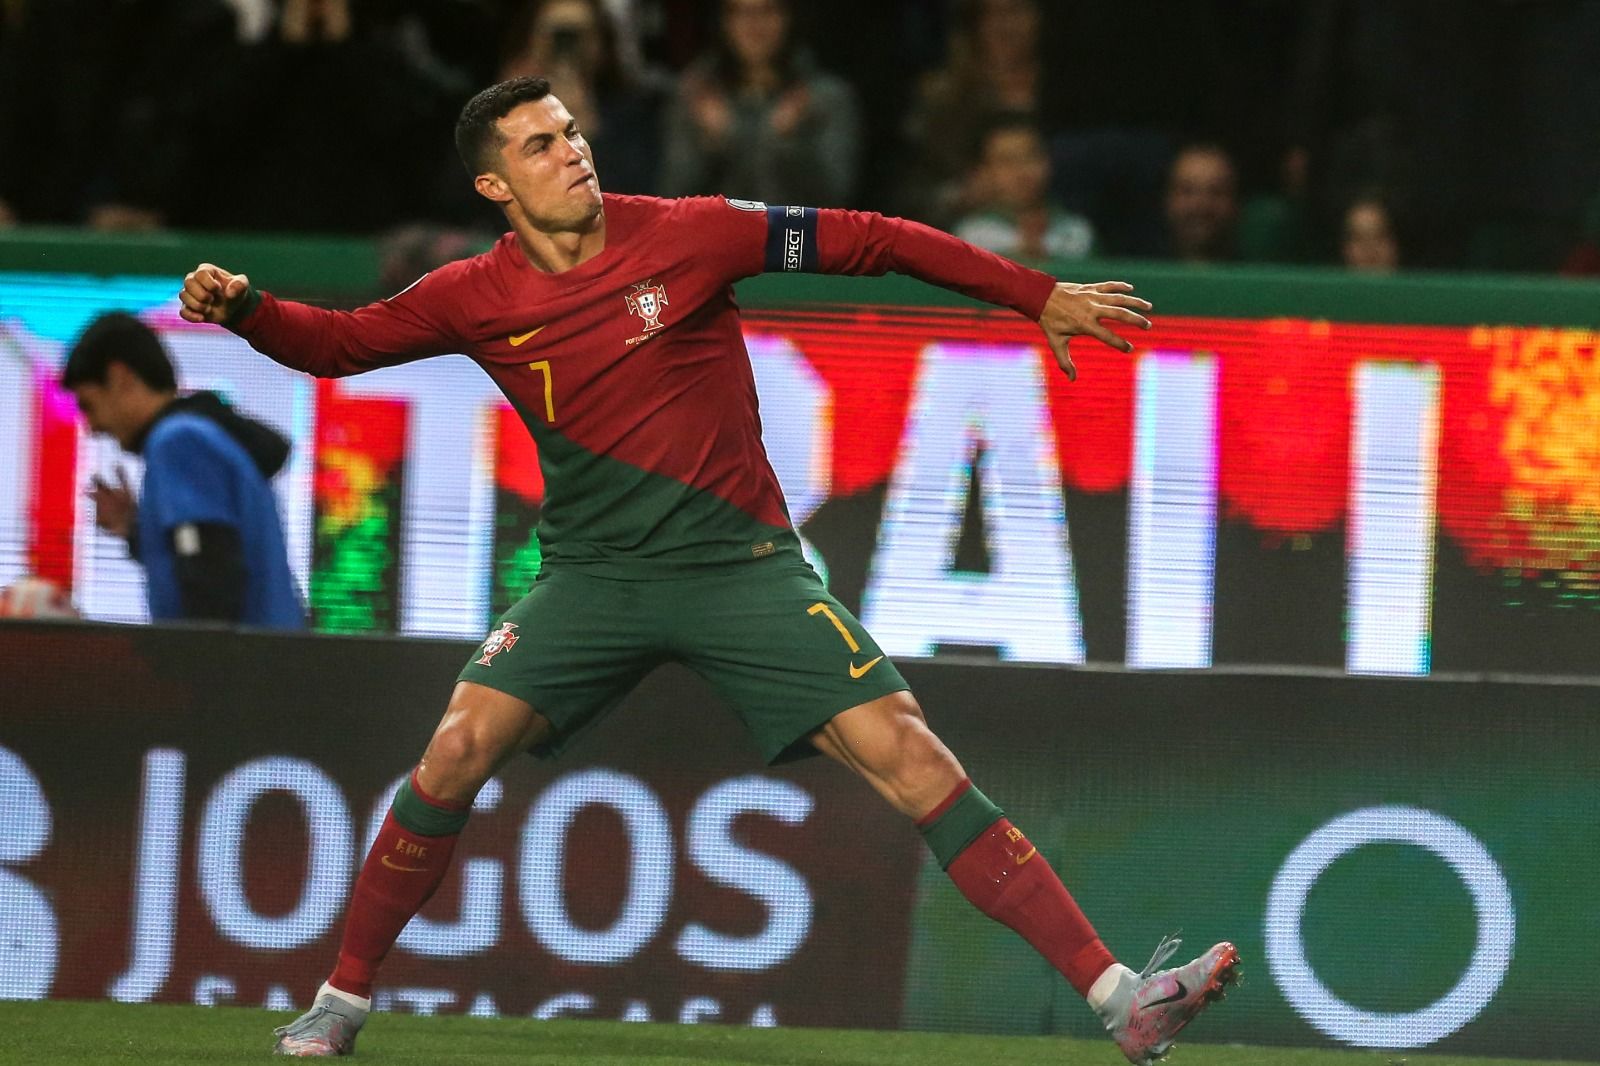 Seis Eurocopas, el récord casi irrompible de Cristiano Ronaldo